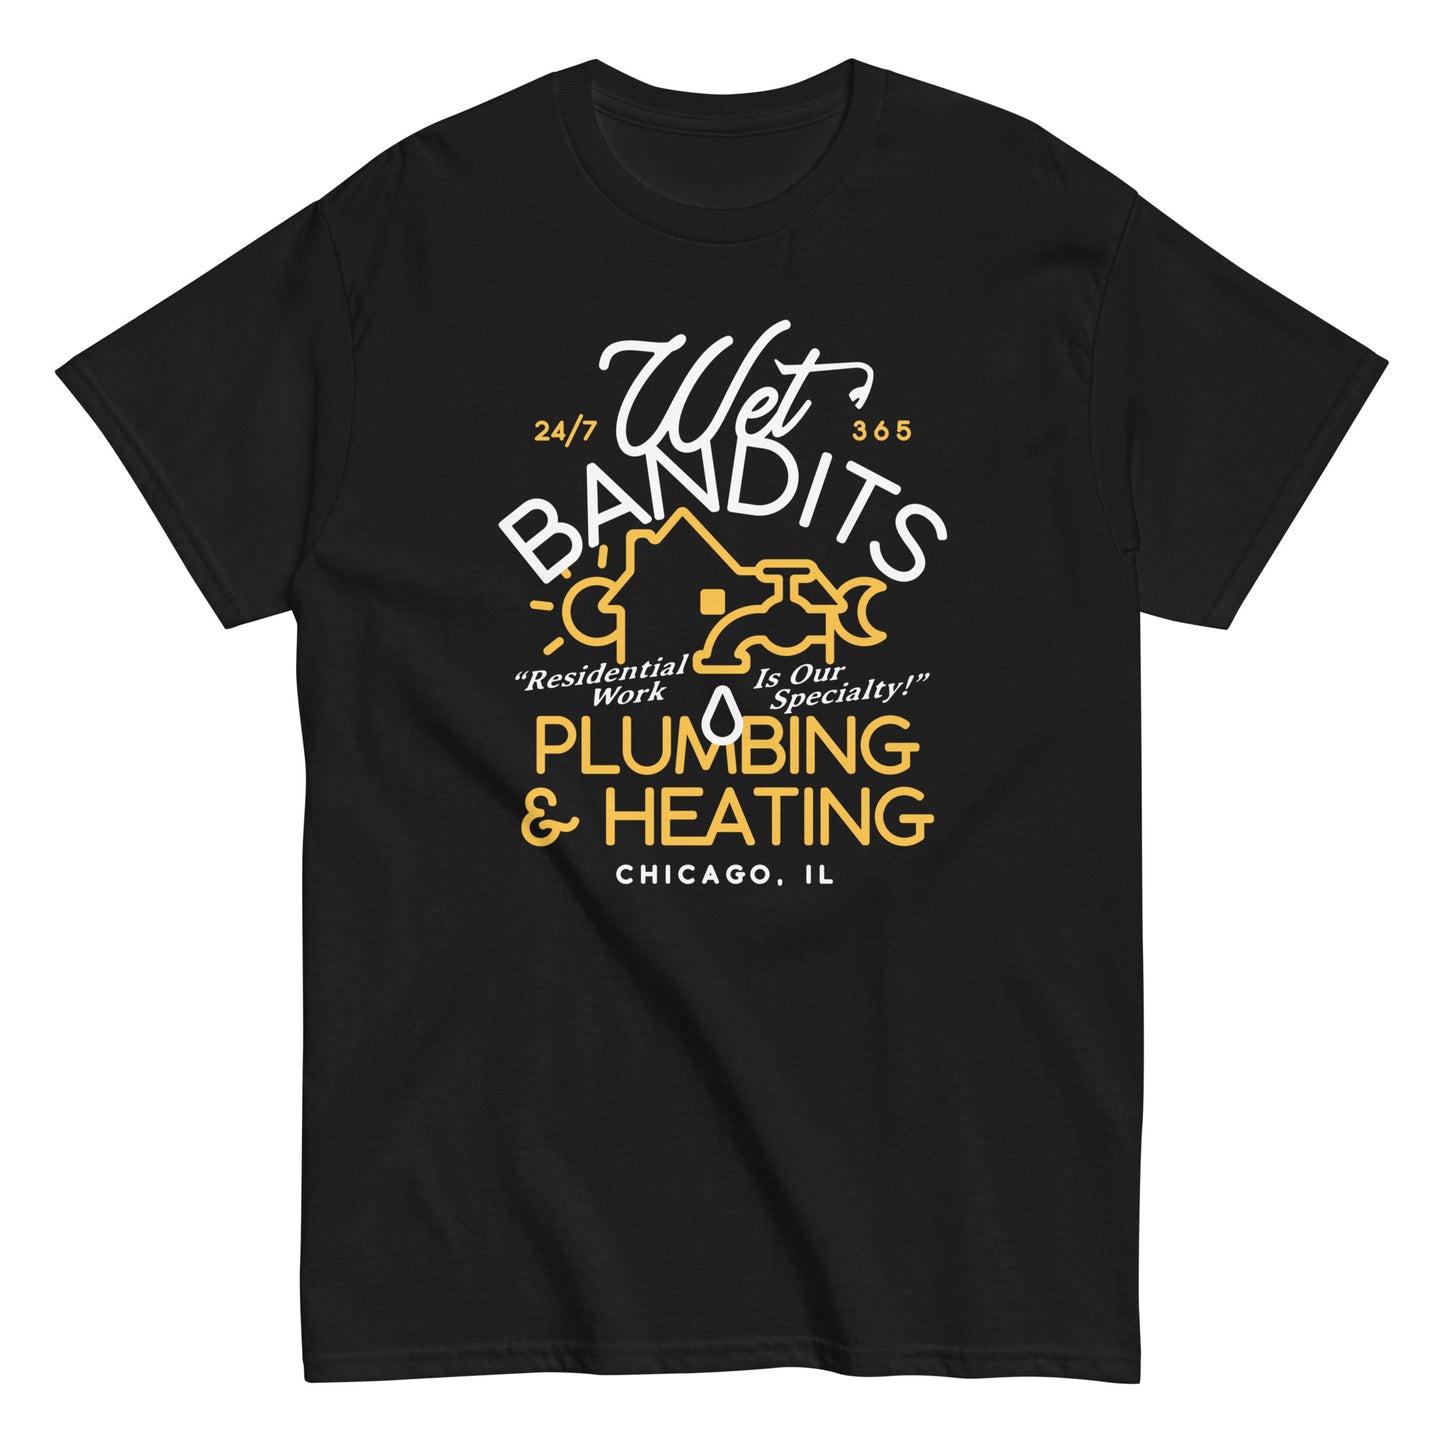 Wet Bandits Plumbing & Heating Men's Classic Tee